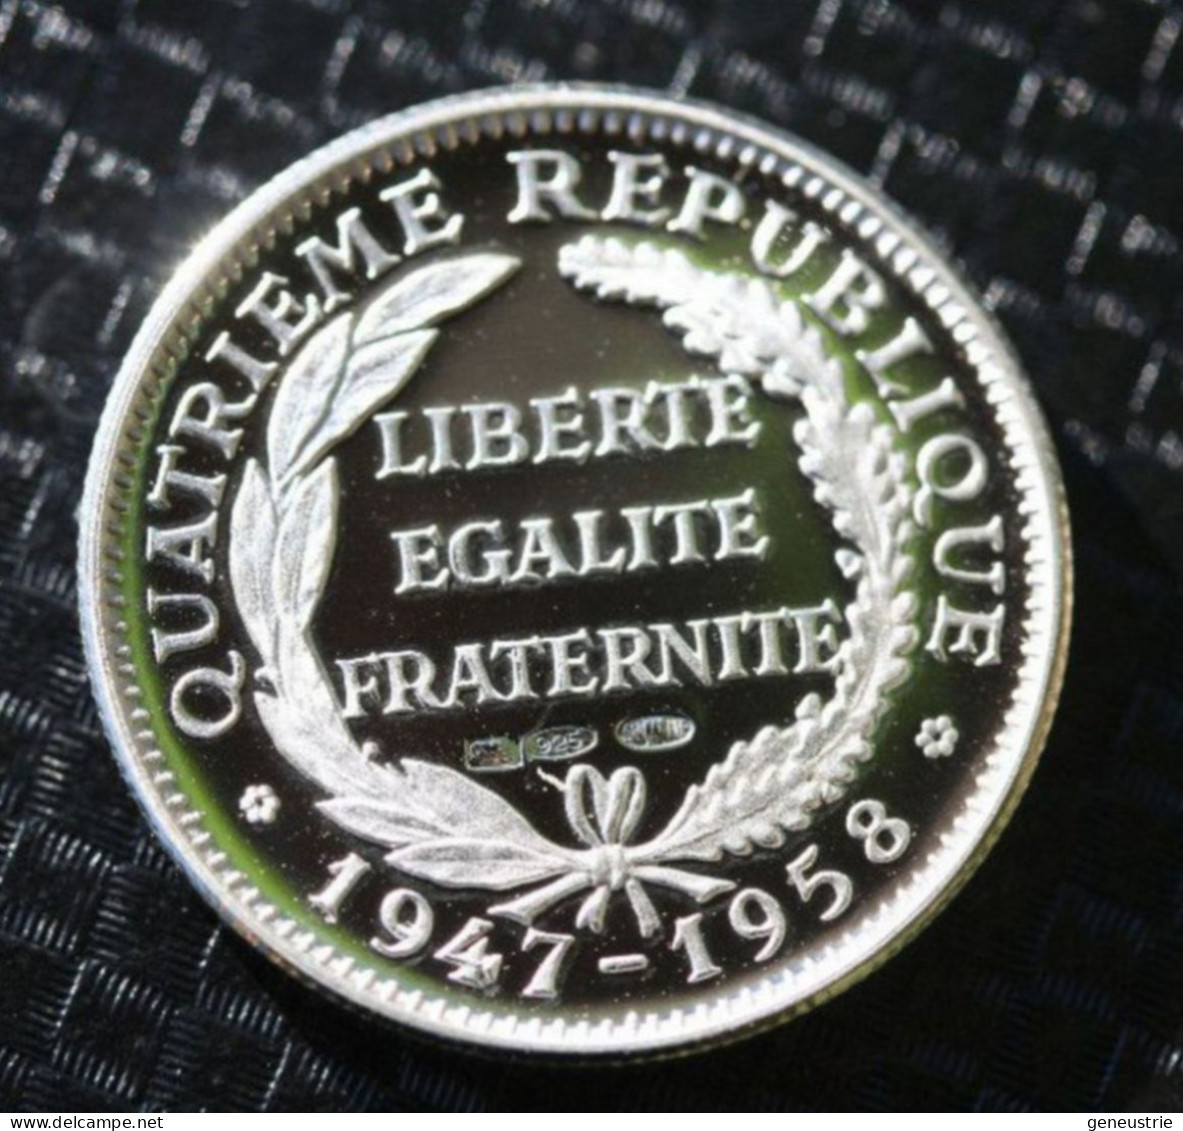 Beau Jeton Argent Poinçonnée 925 - 21mm "Président De La République Vincent Auriol" French President Token - Souvenirmunten (elongated Coins)